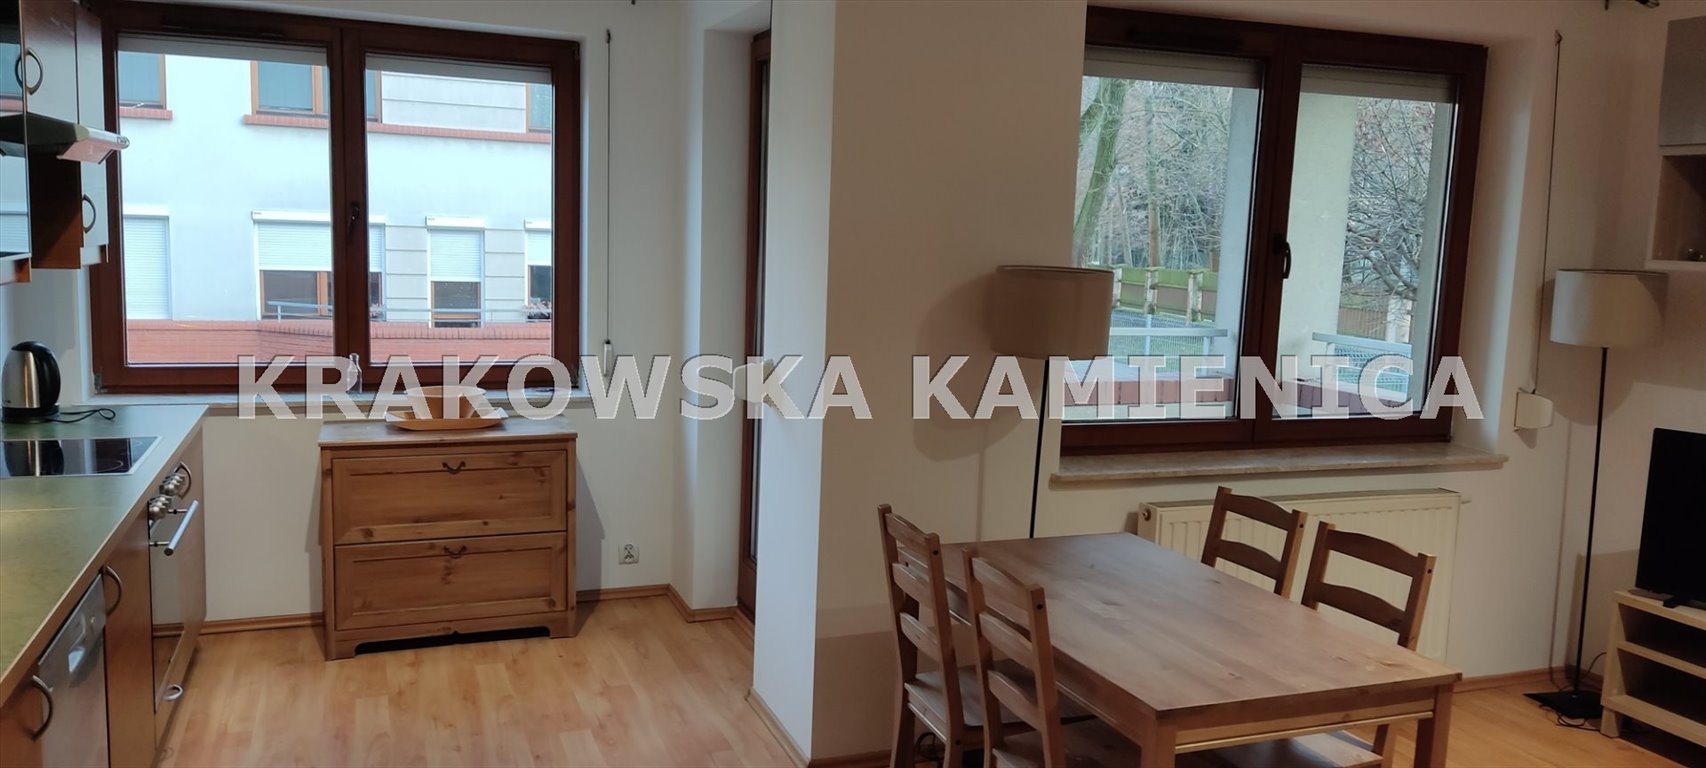 Mieszkanie dwupokojowe na sprzedaż Kraków, Zwierzyniec, Wola Justowska, Olszanicka  55m2 Foto 1